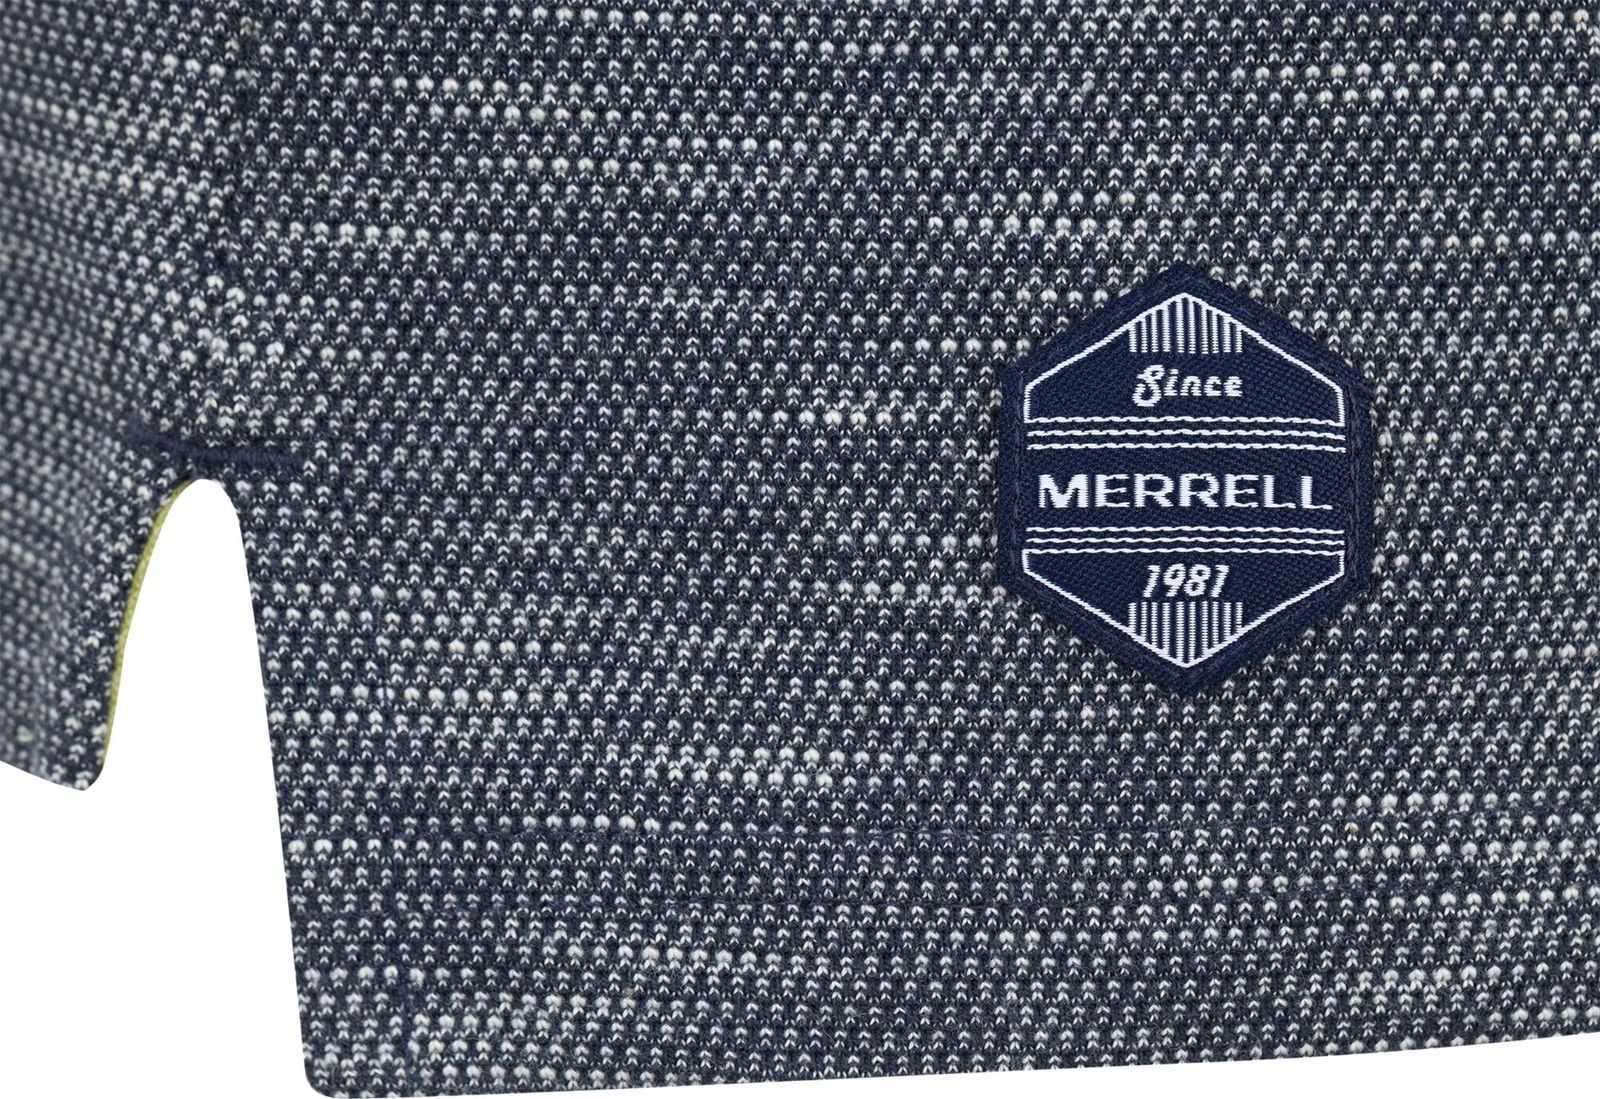   Merrell Men's Polo, : -. S17AMRPOM01-5M.  58